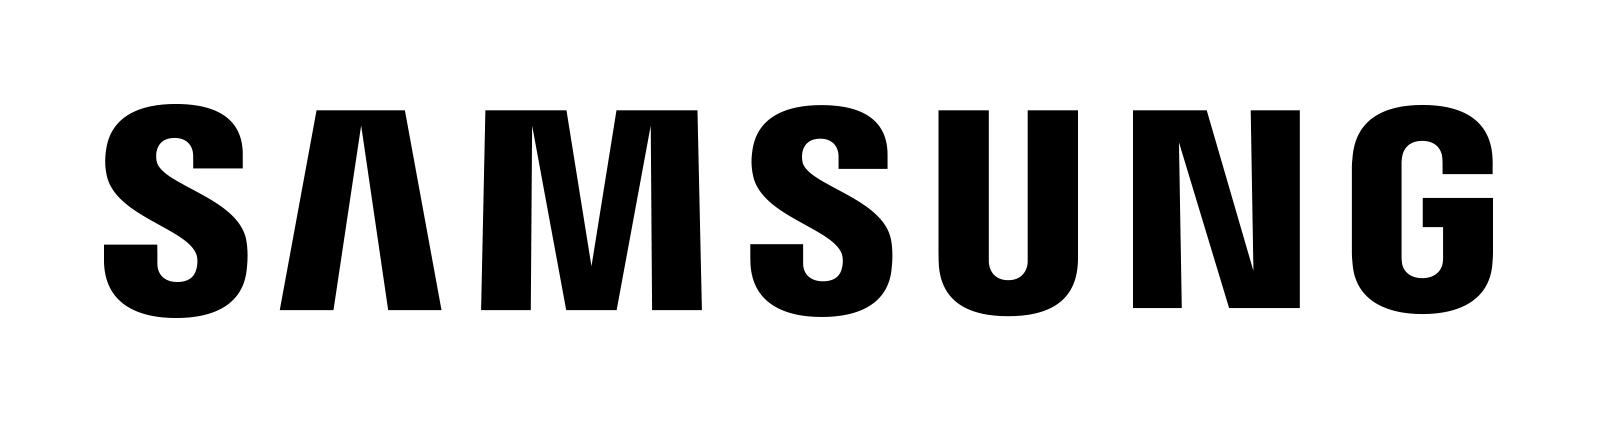 Partner - Samsung - logo